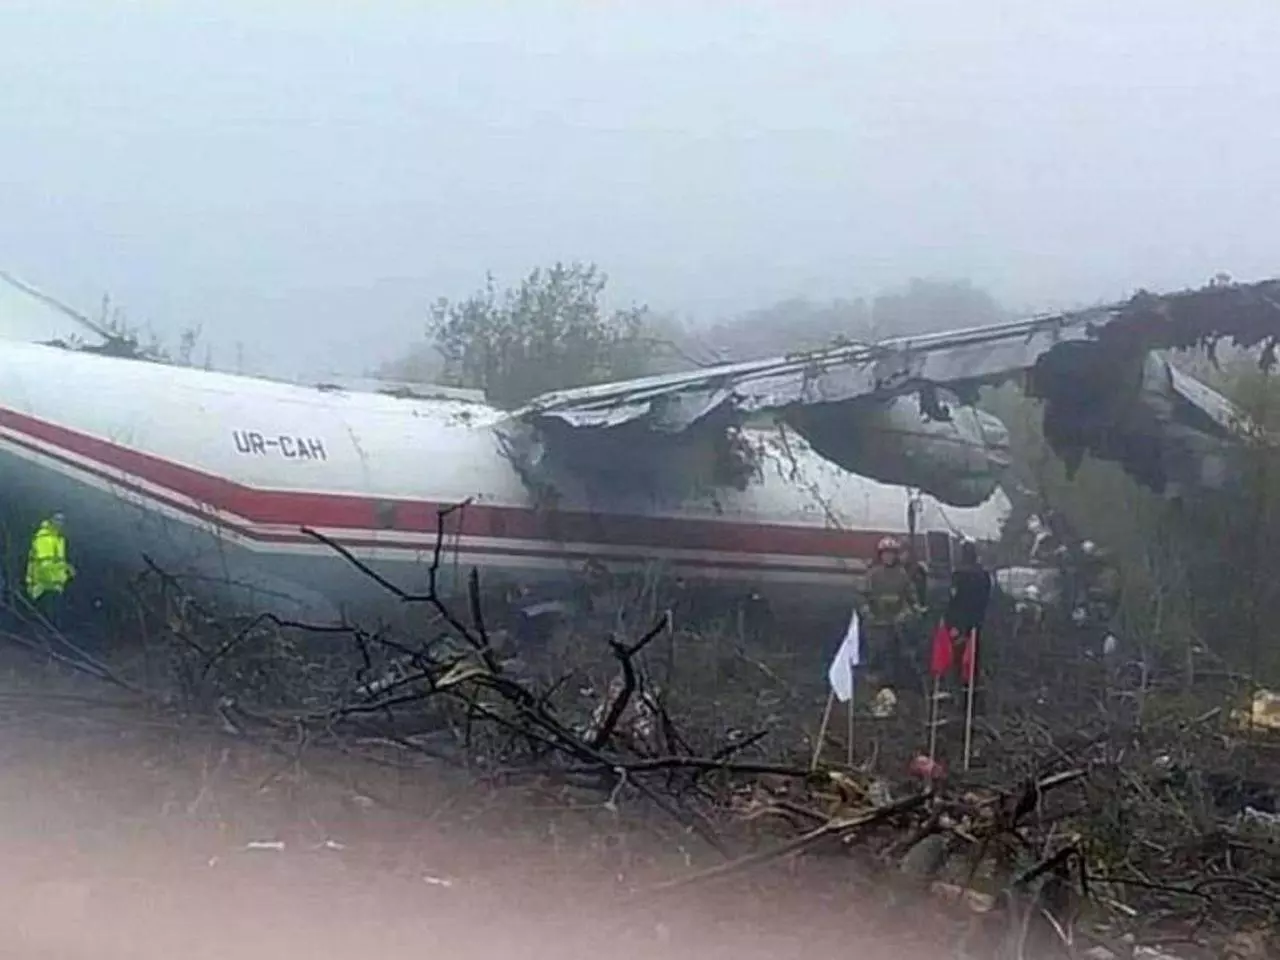 Катастрофа ту-154 под иркутском 1994